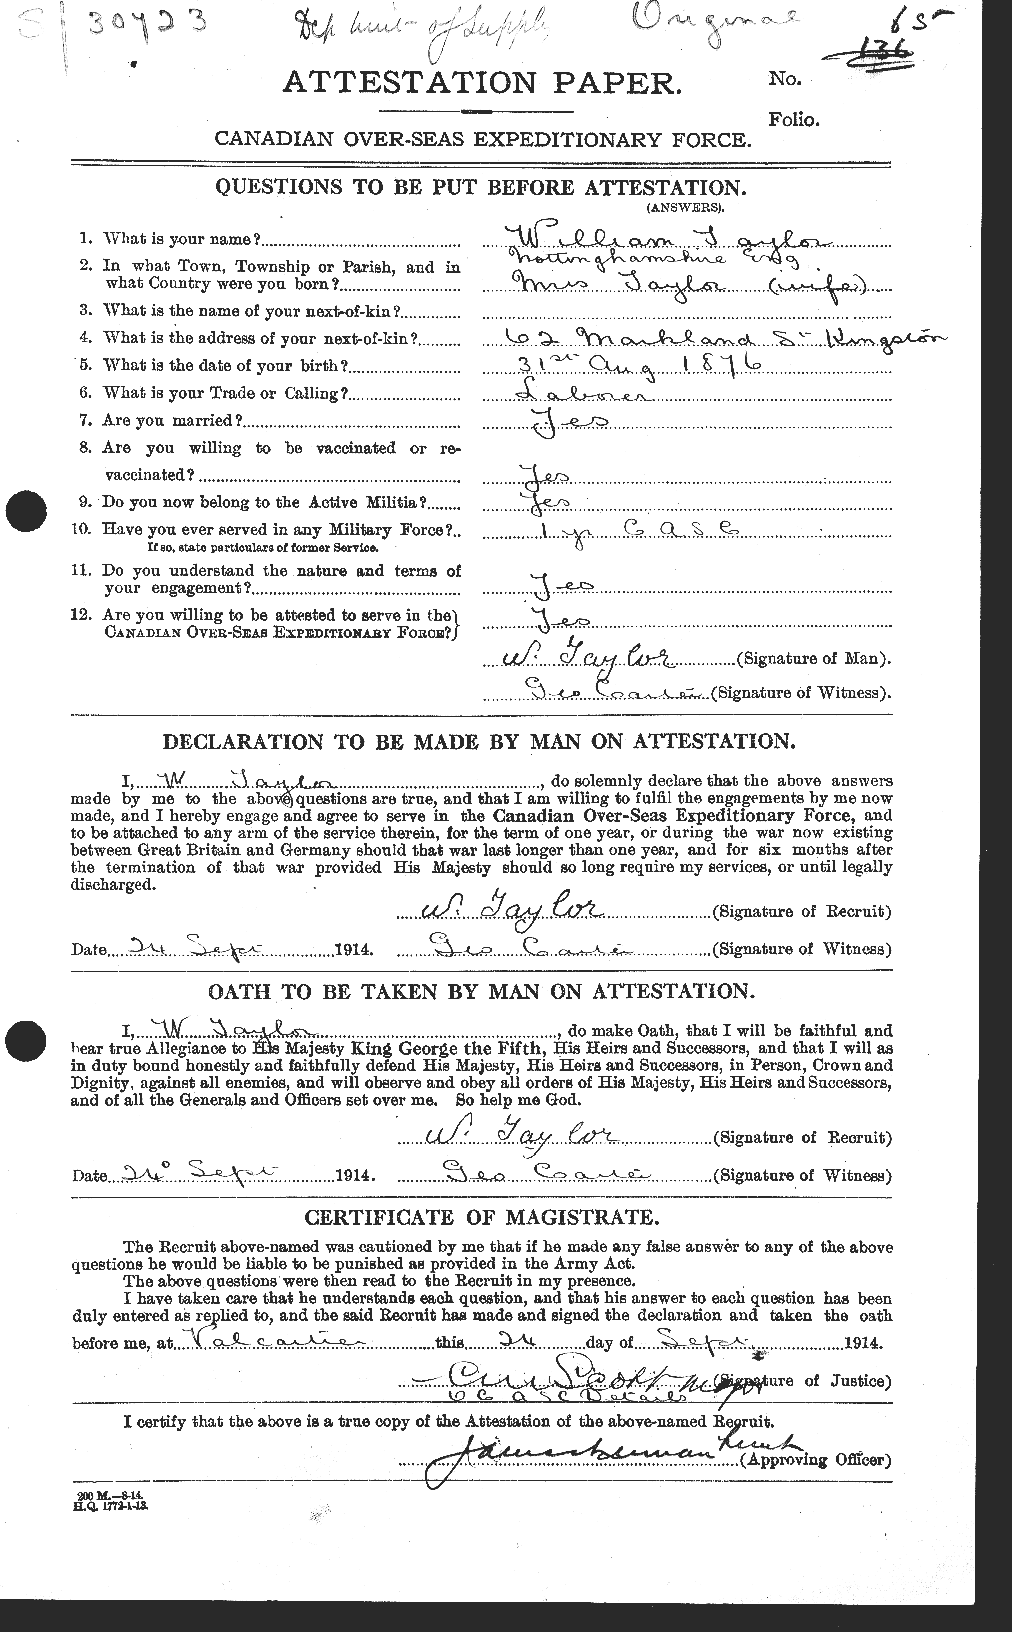 Dossiers du Personnel de la Première Guerre mondiale - CEC 628108a